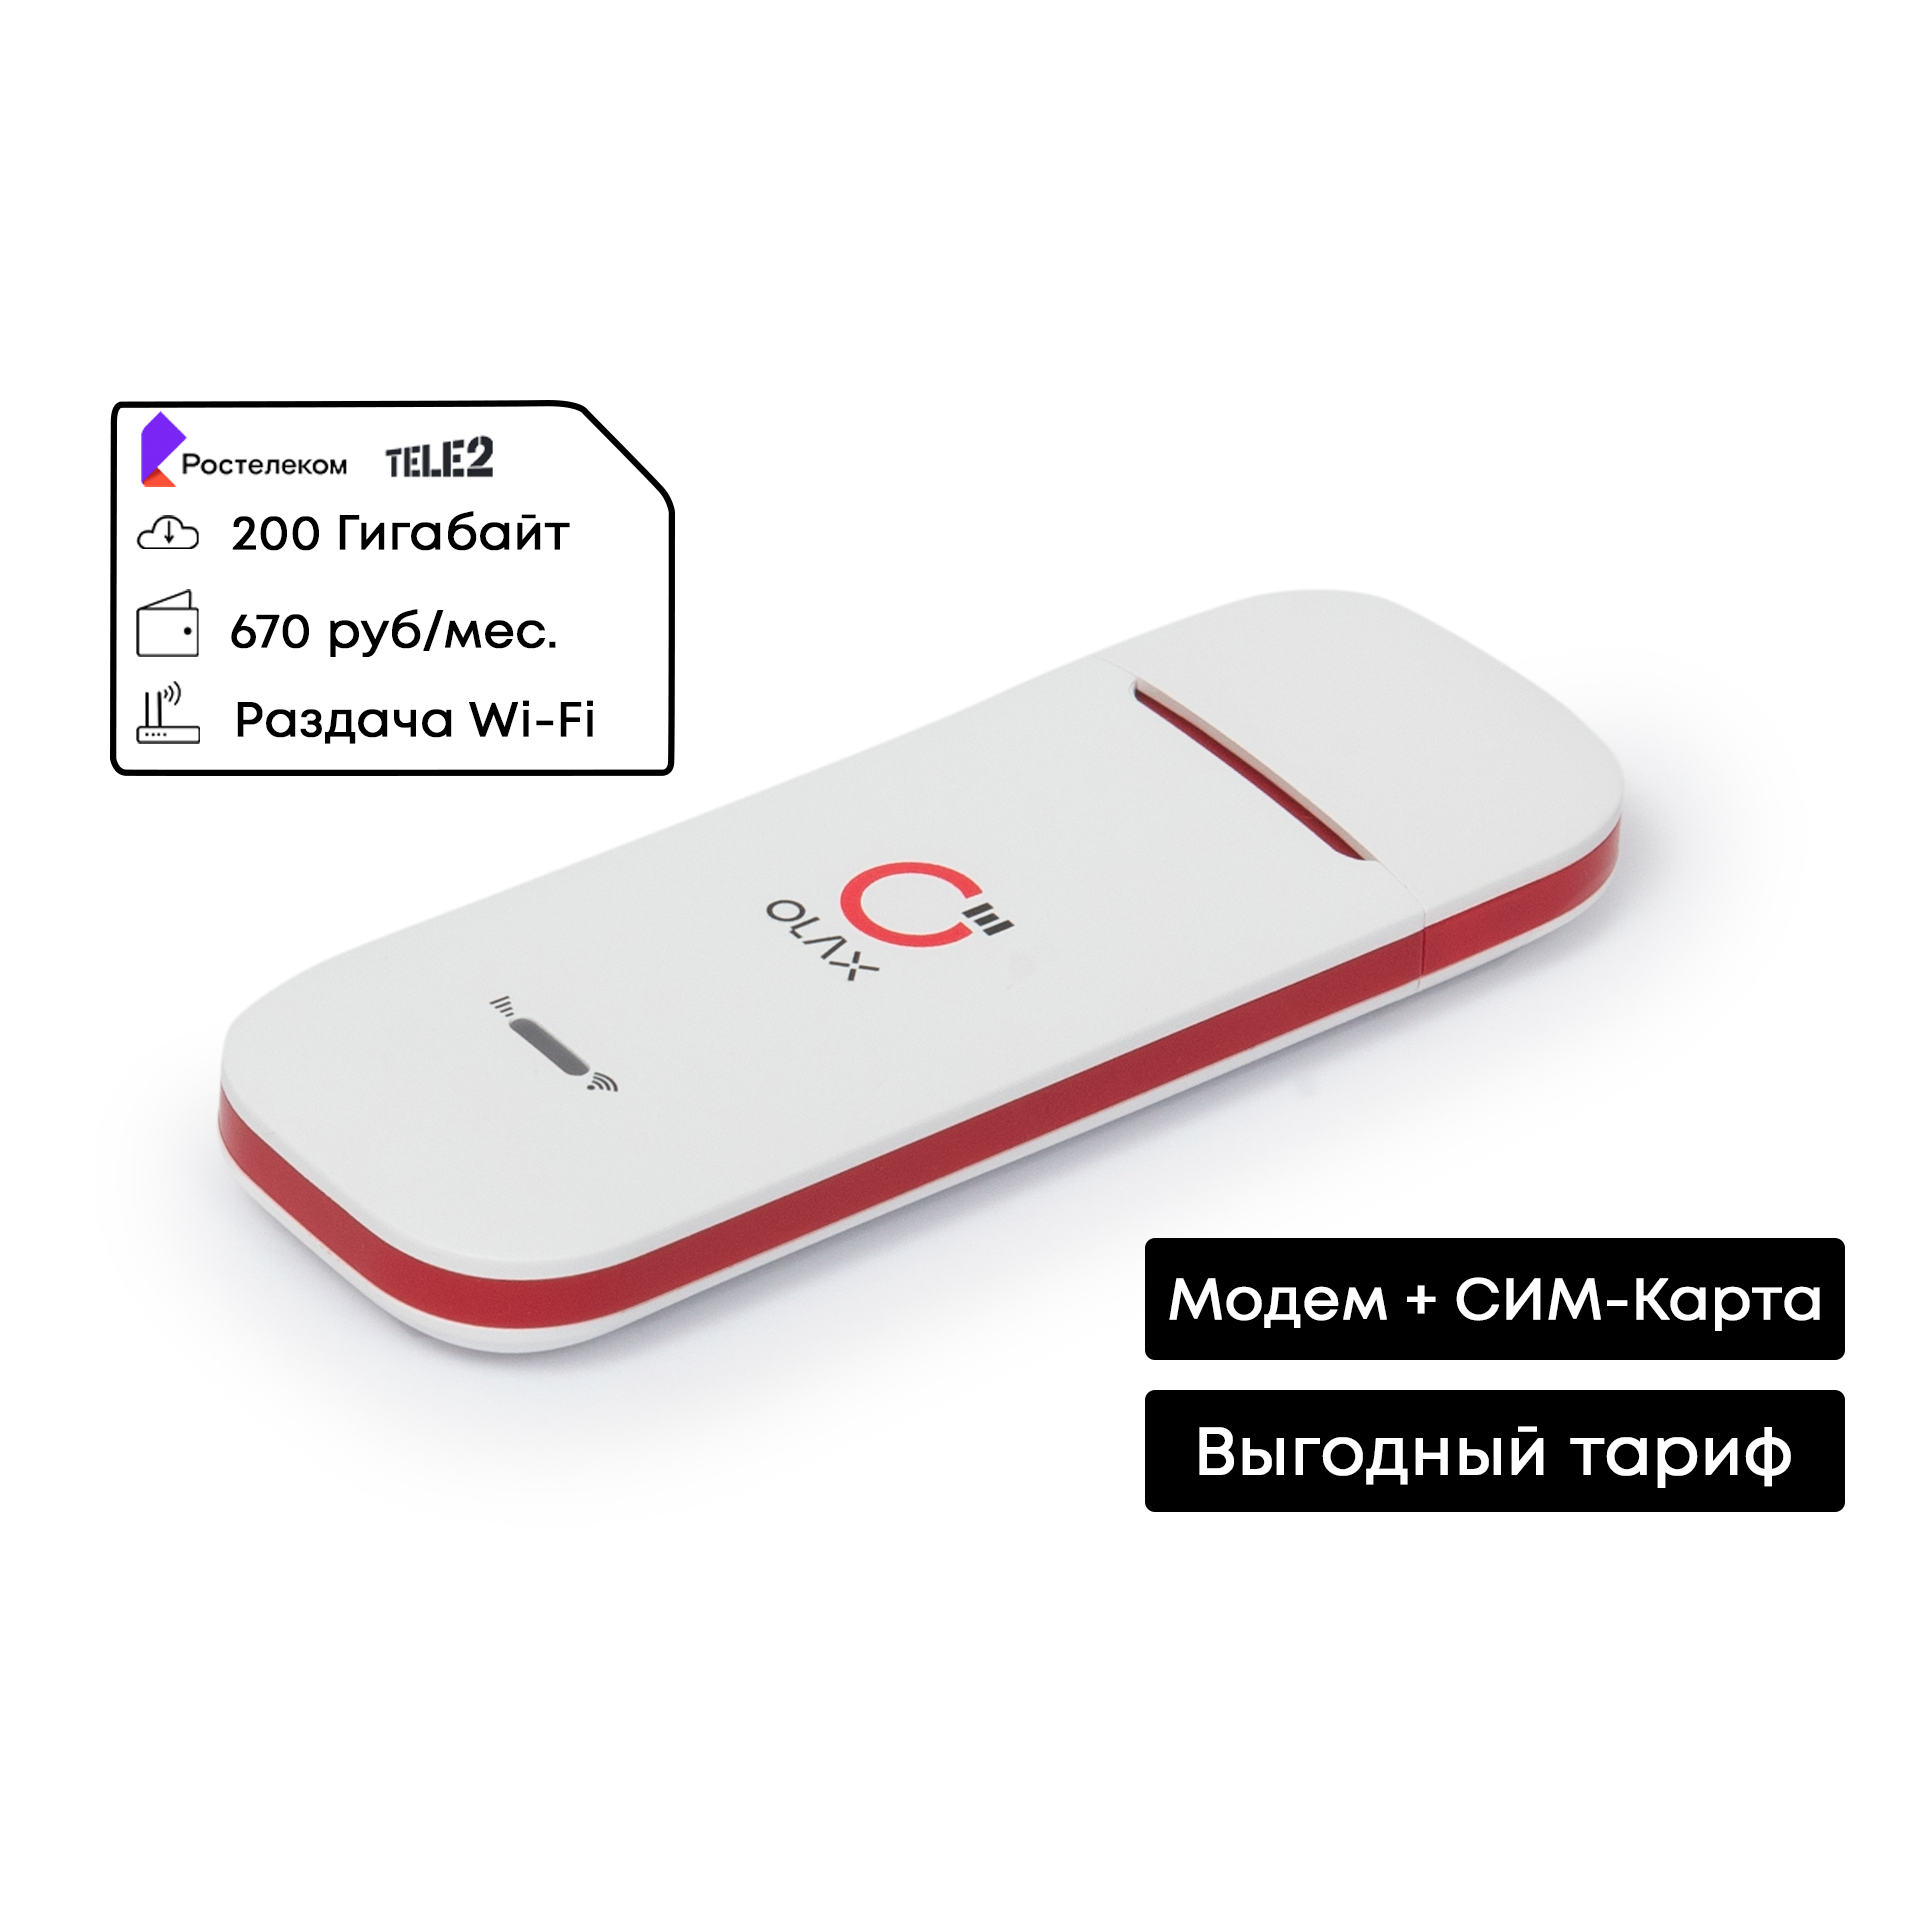 4G Модем с Wi-Fi + ТЕЛЕ2 / РТК 200ГБ